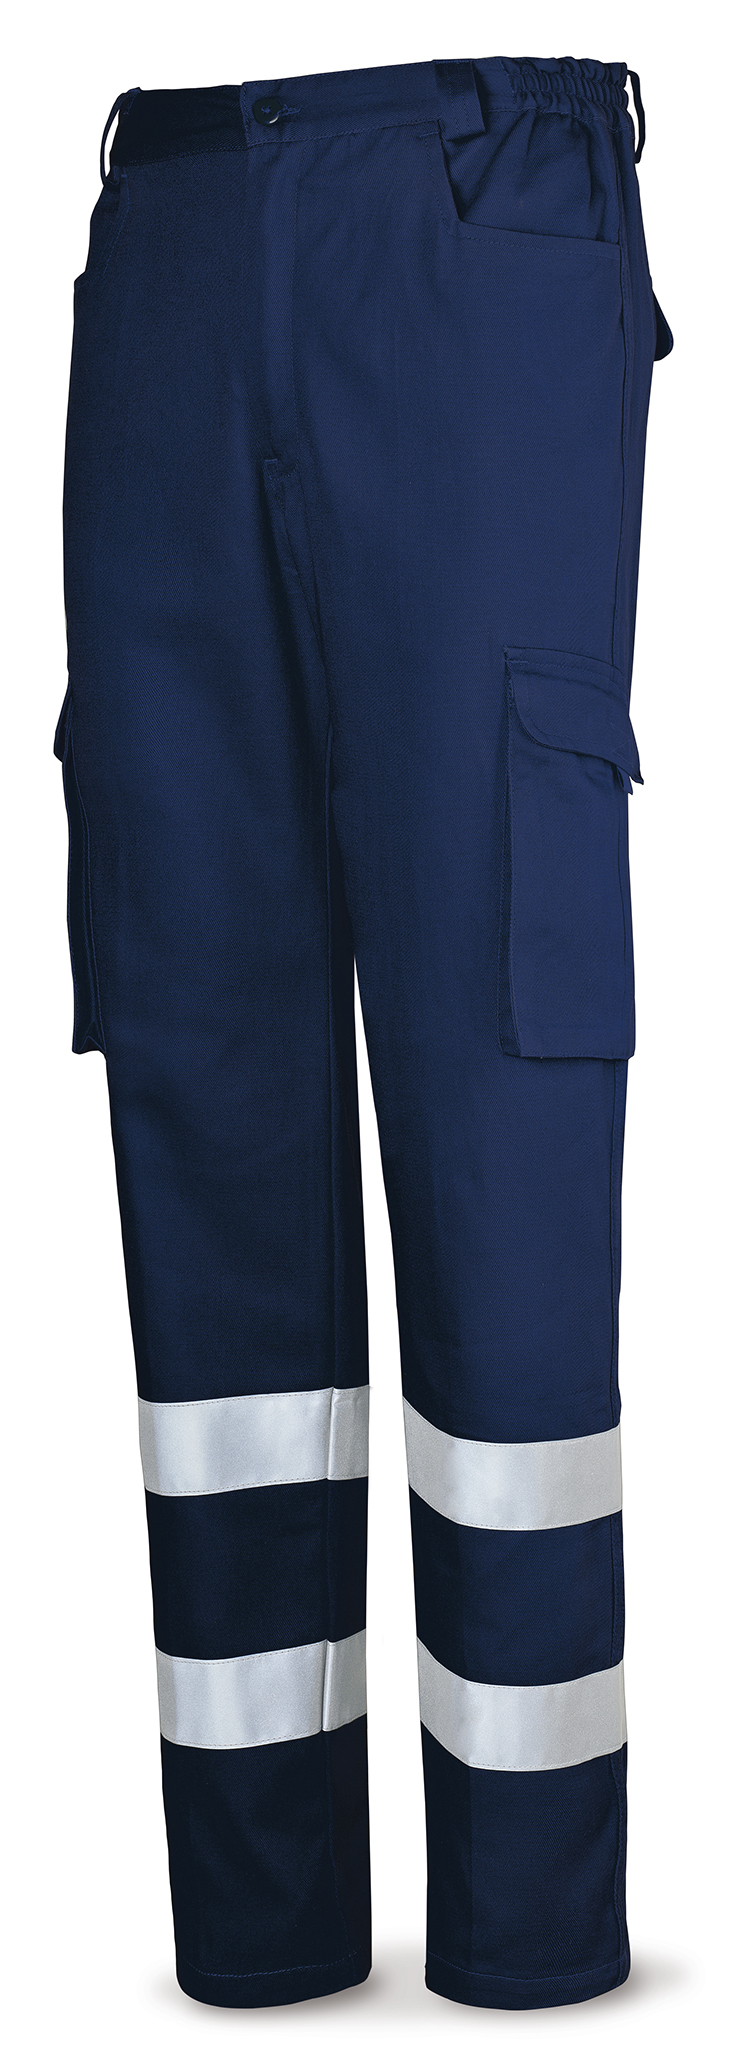 488-PACR Top Vestuario Laboral Top Series Calça de algodão azul marinho com listras refletivas 245 g.